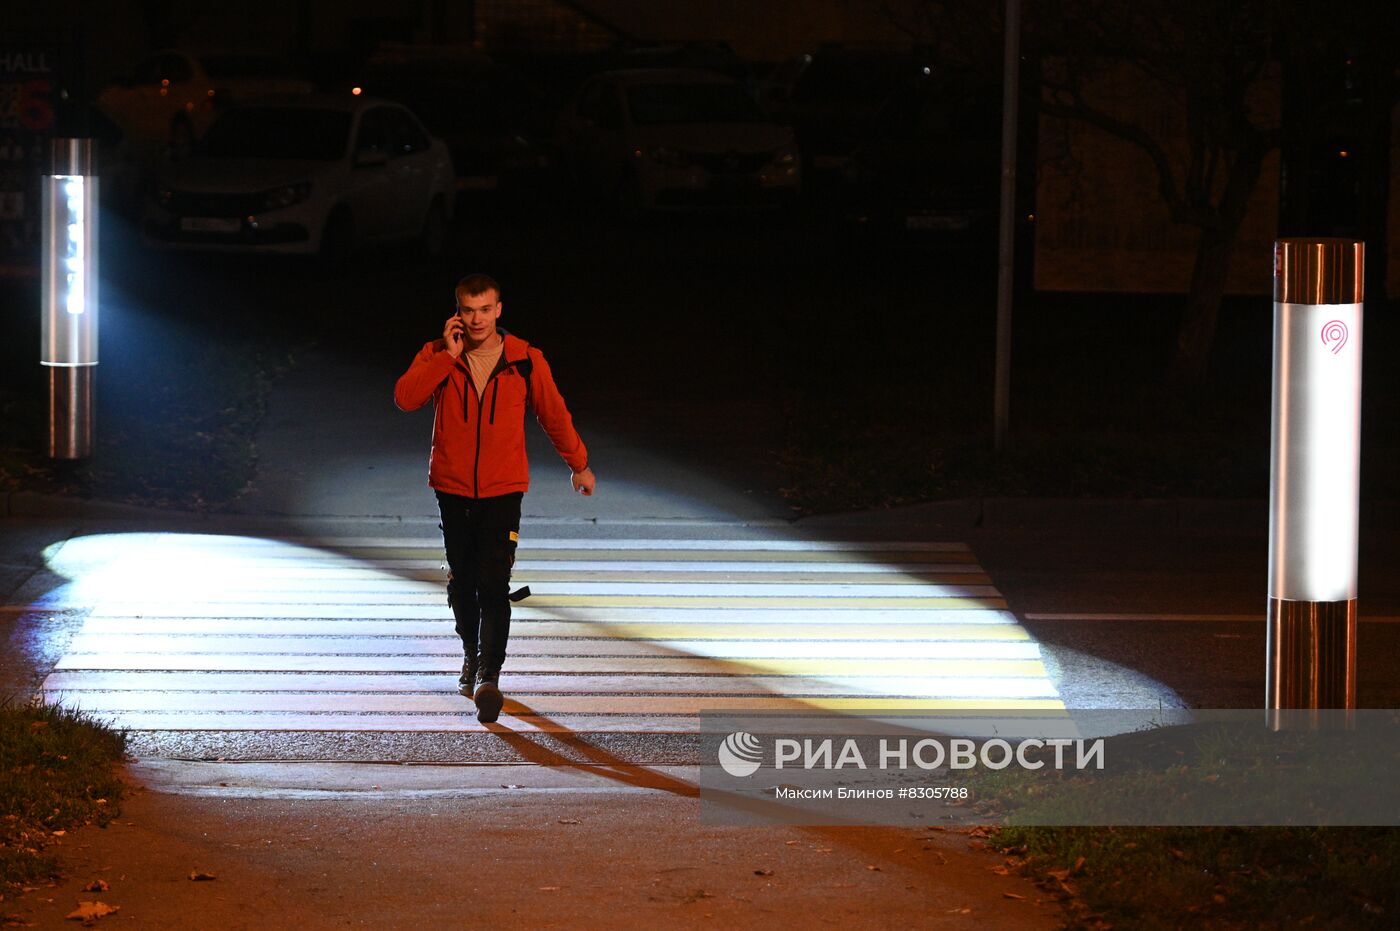 Новый тип подсветки пешеходного перехода установили в Москве